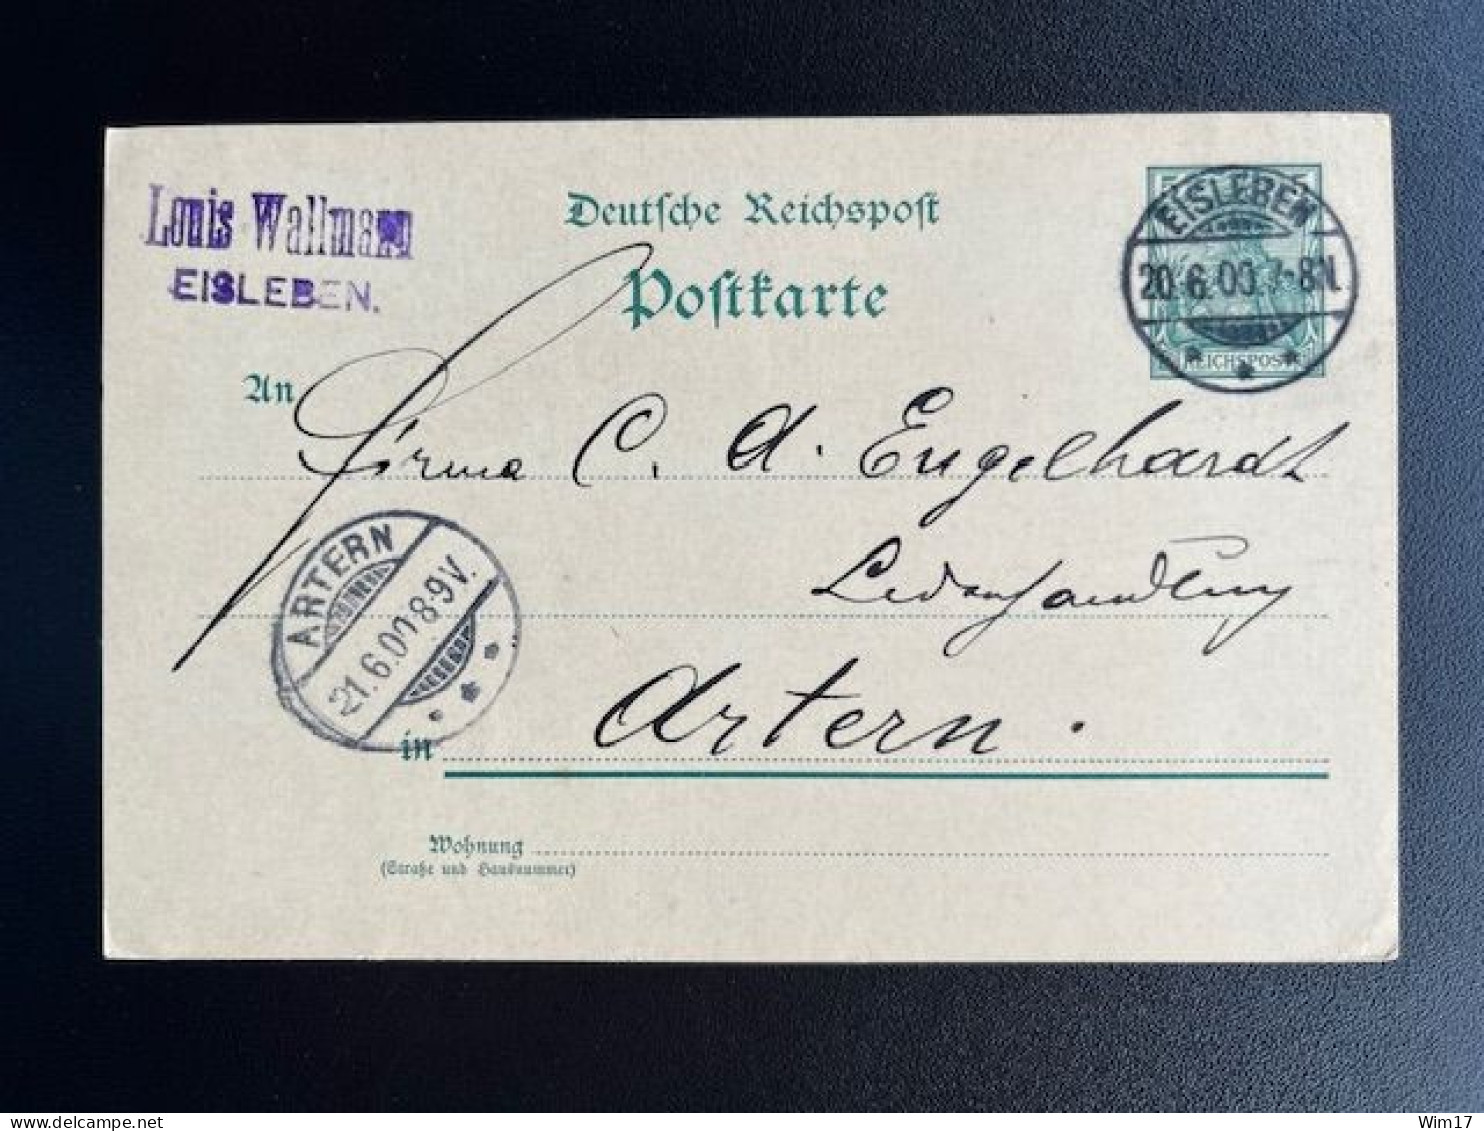 GERMANY 1900 POSTCARD EISLEBEN TO ARTERN 20-06-1900 DUITSLAND DEUTSCHLAND - Postkarten